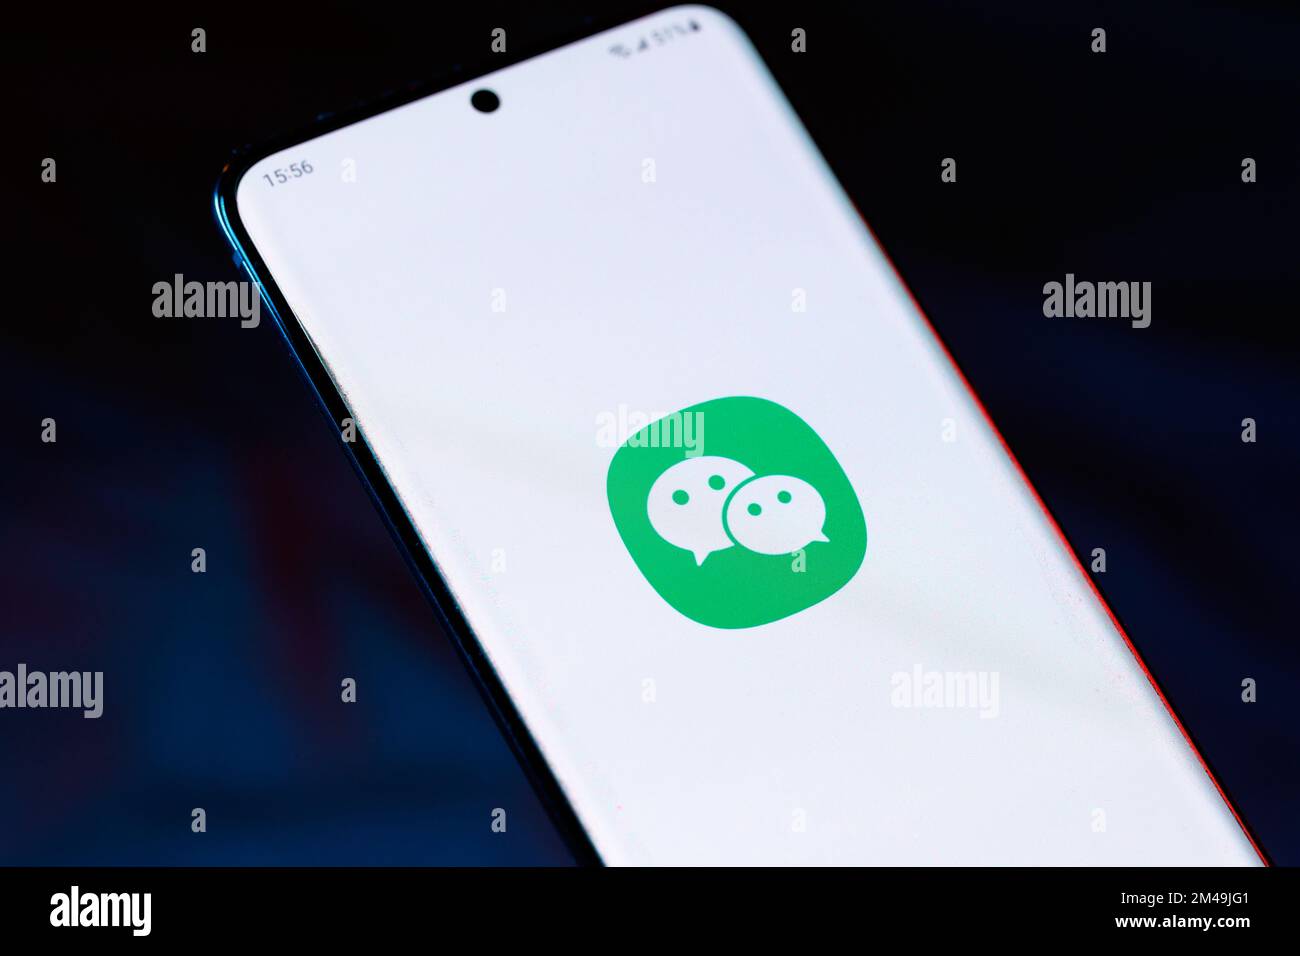 Das WeChat-Logo auf einem Smartphone. WeChat ist eine Instant Messaging-App von Tencent, die viele ausländische Gemeinden nutzen, um mit Freunden und Familienmitgliedern zu kommunizieren Stockfoto